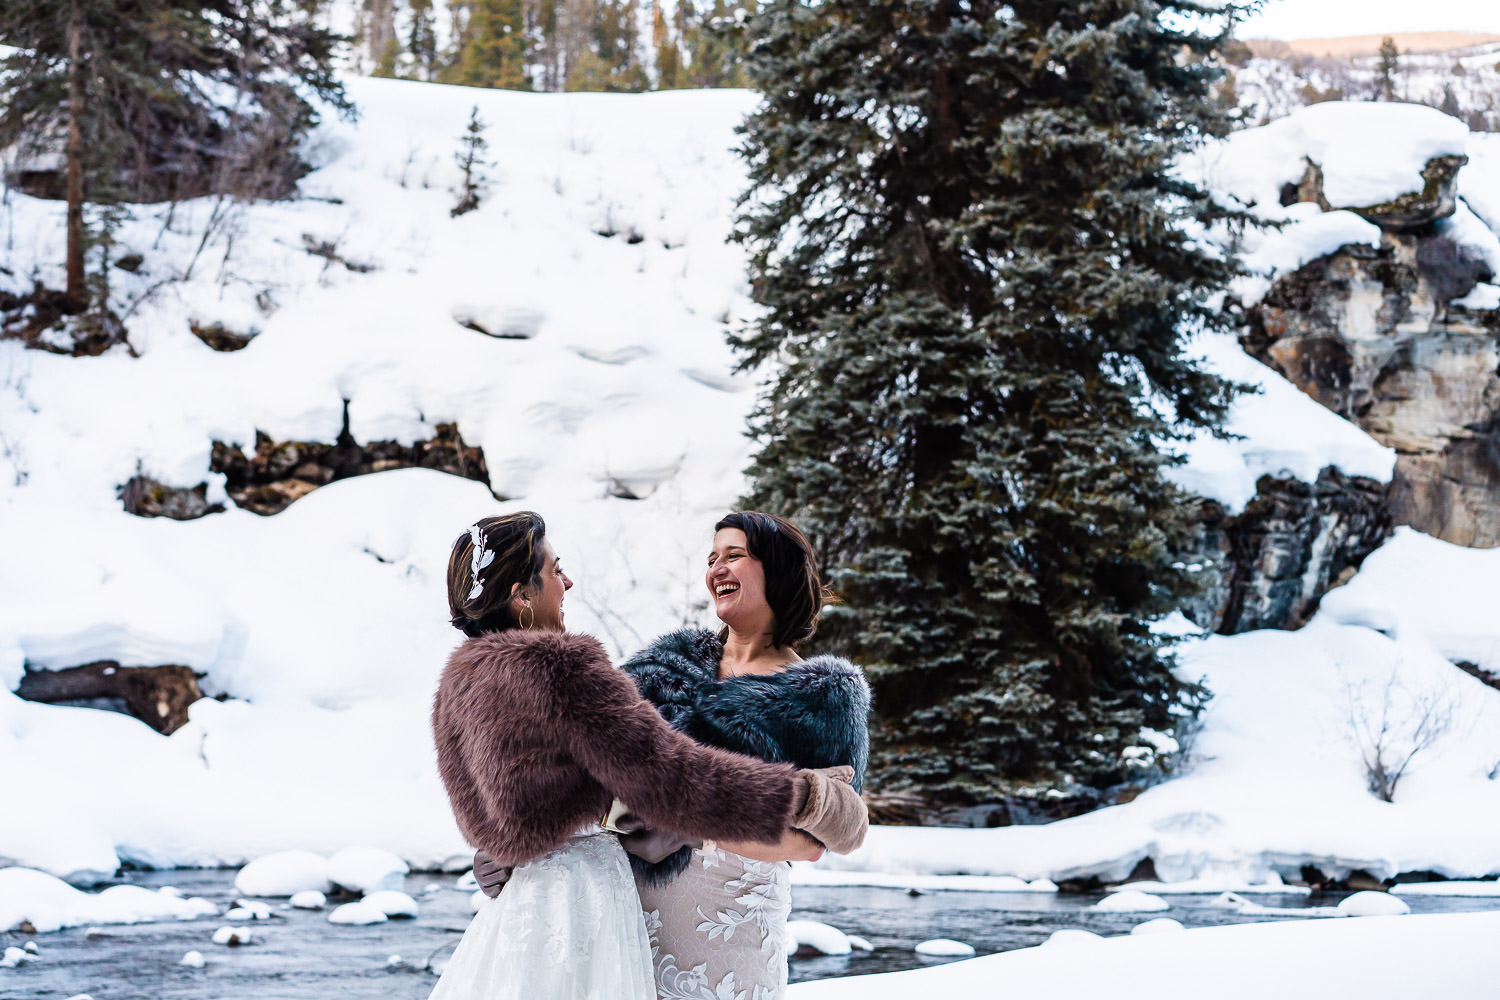 LGBTQ+ elopement ceremony in Colorado